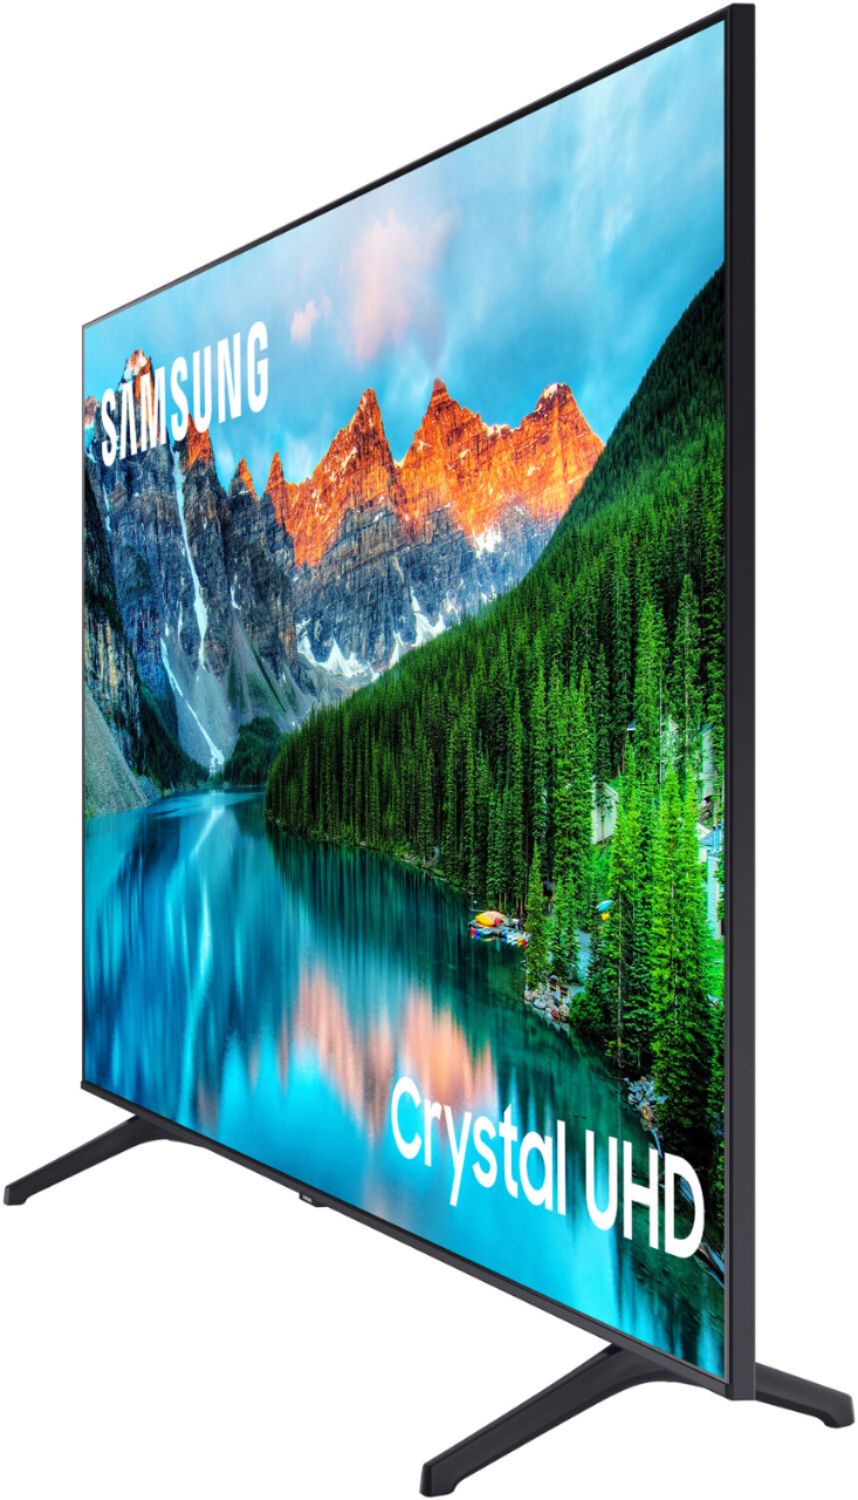 Samsung BE65C-H BEC-H Series - 65 LED-backlit LCD TV - Crystal UHD - 4K -  for digital signage - BE65C-H - TVs 